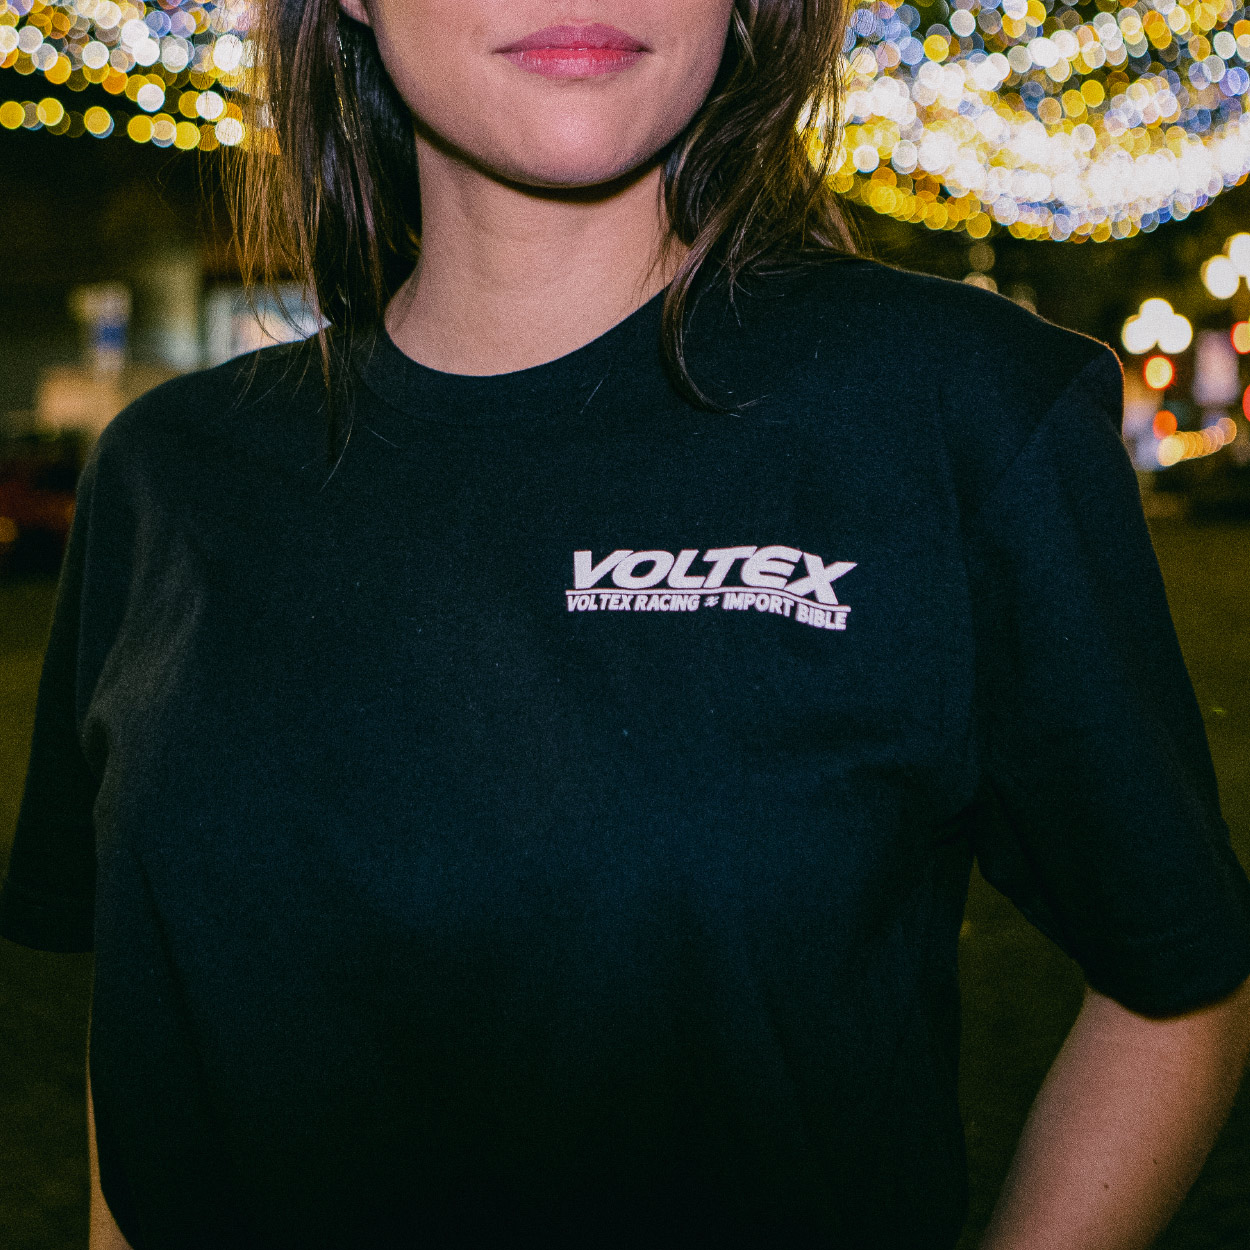 Cyber (Voltex) Shirt